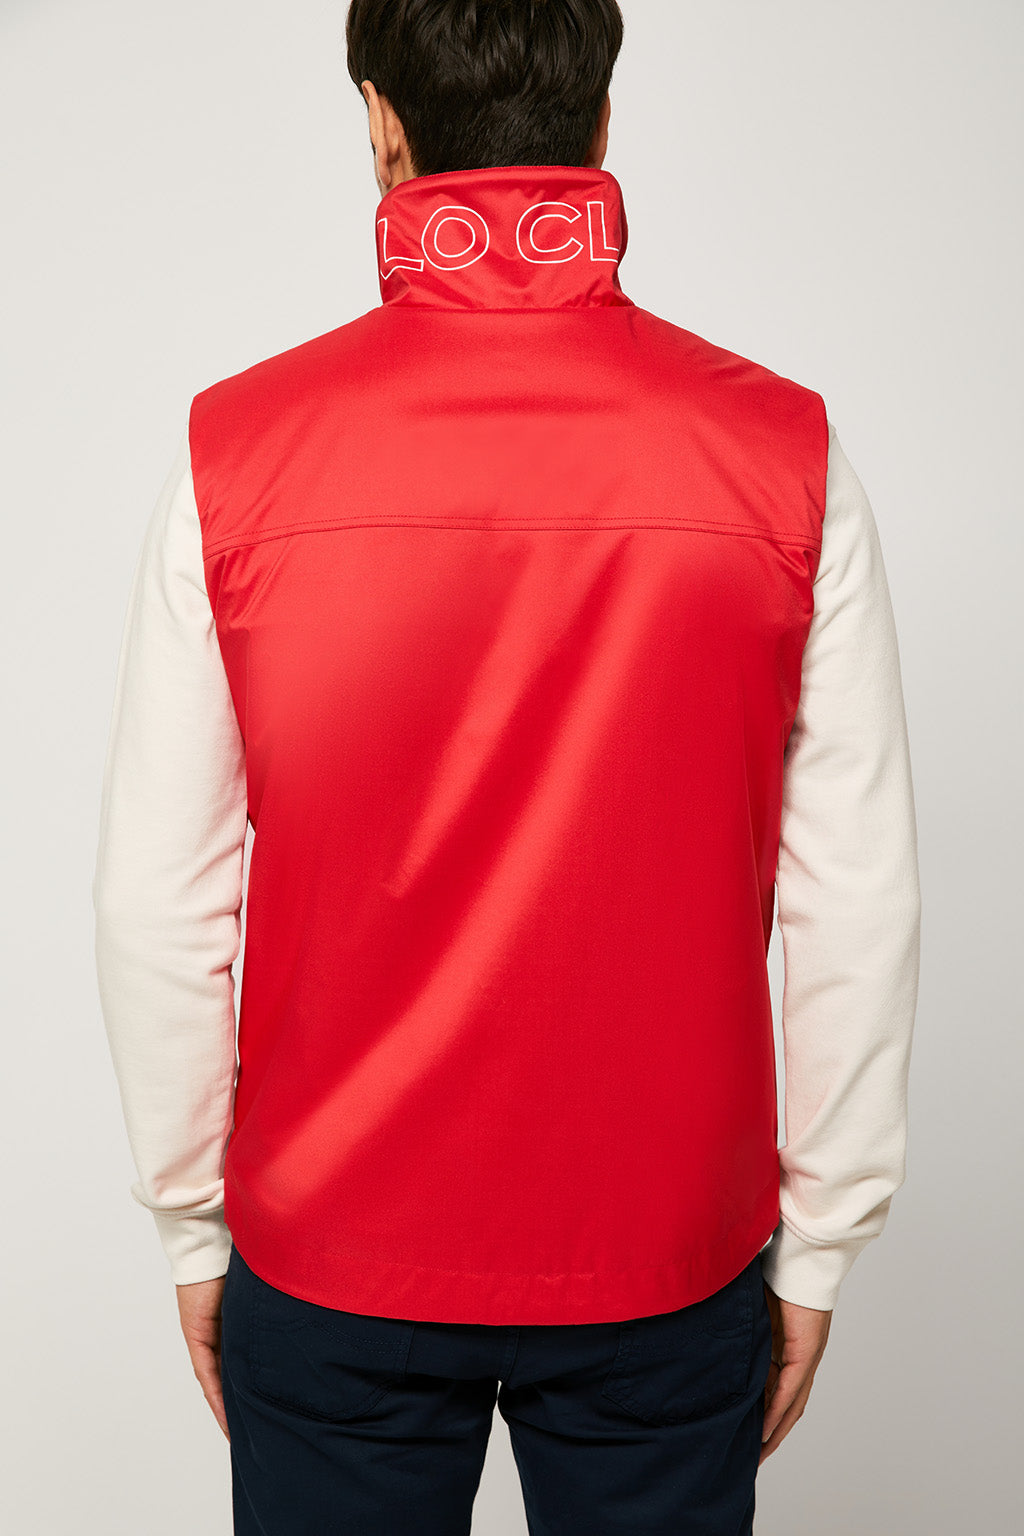 Chaleco técnico rojo con estampado en el cuello – Polo Club